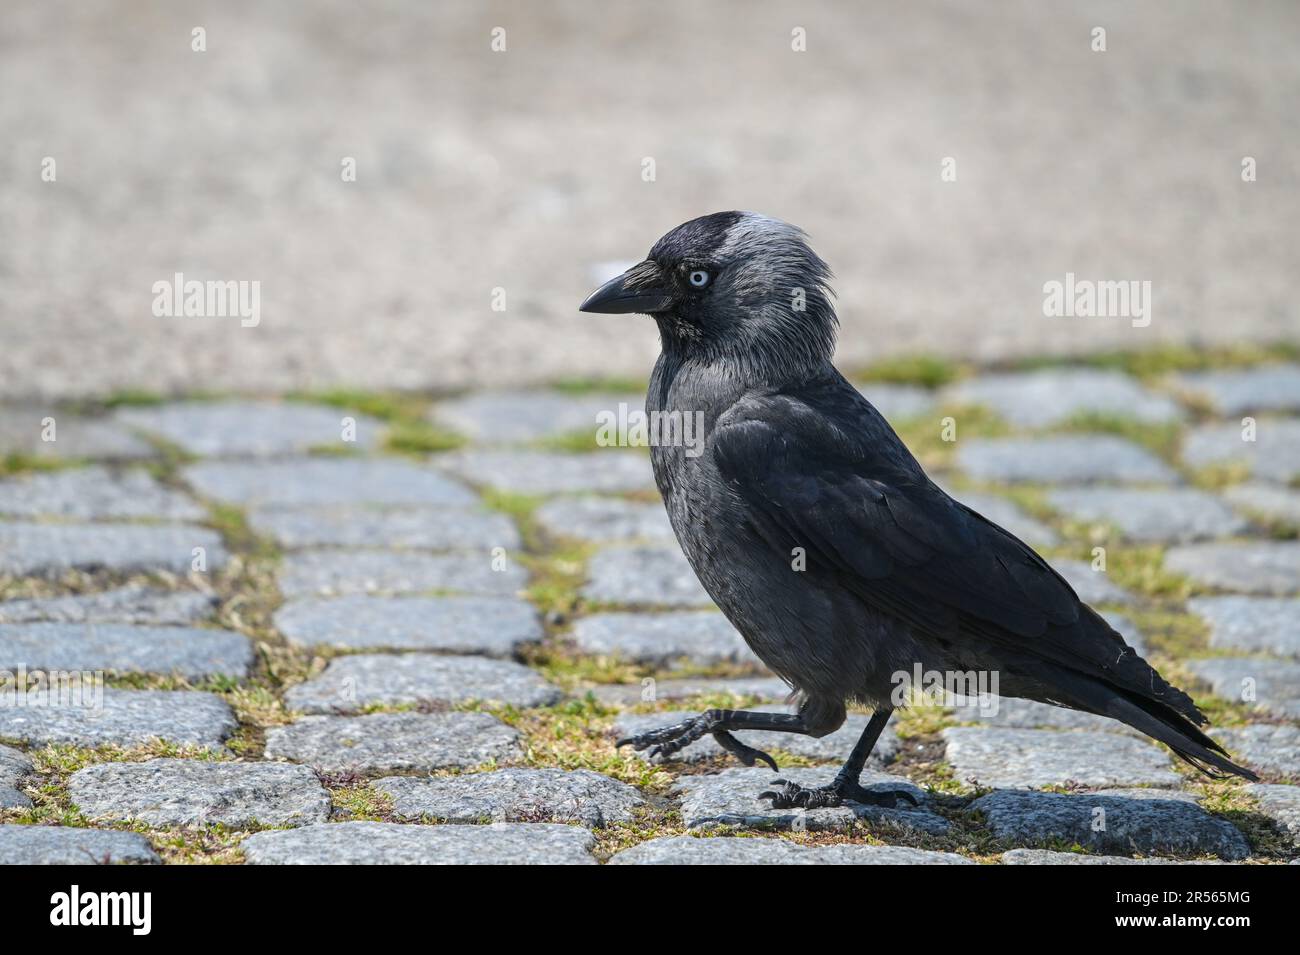 Western jackdaw (Coloeus monidula) a piedi su un marciapiede acciottolato, uccello passerino nella famiglia Crow, riconoscibile dal piumaggio nero-grigio e li Foto Stock